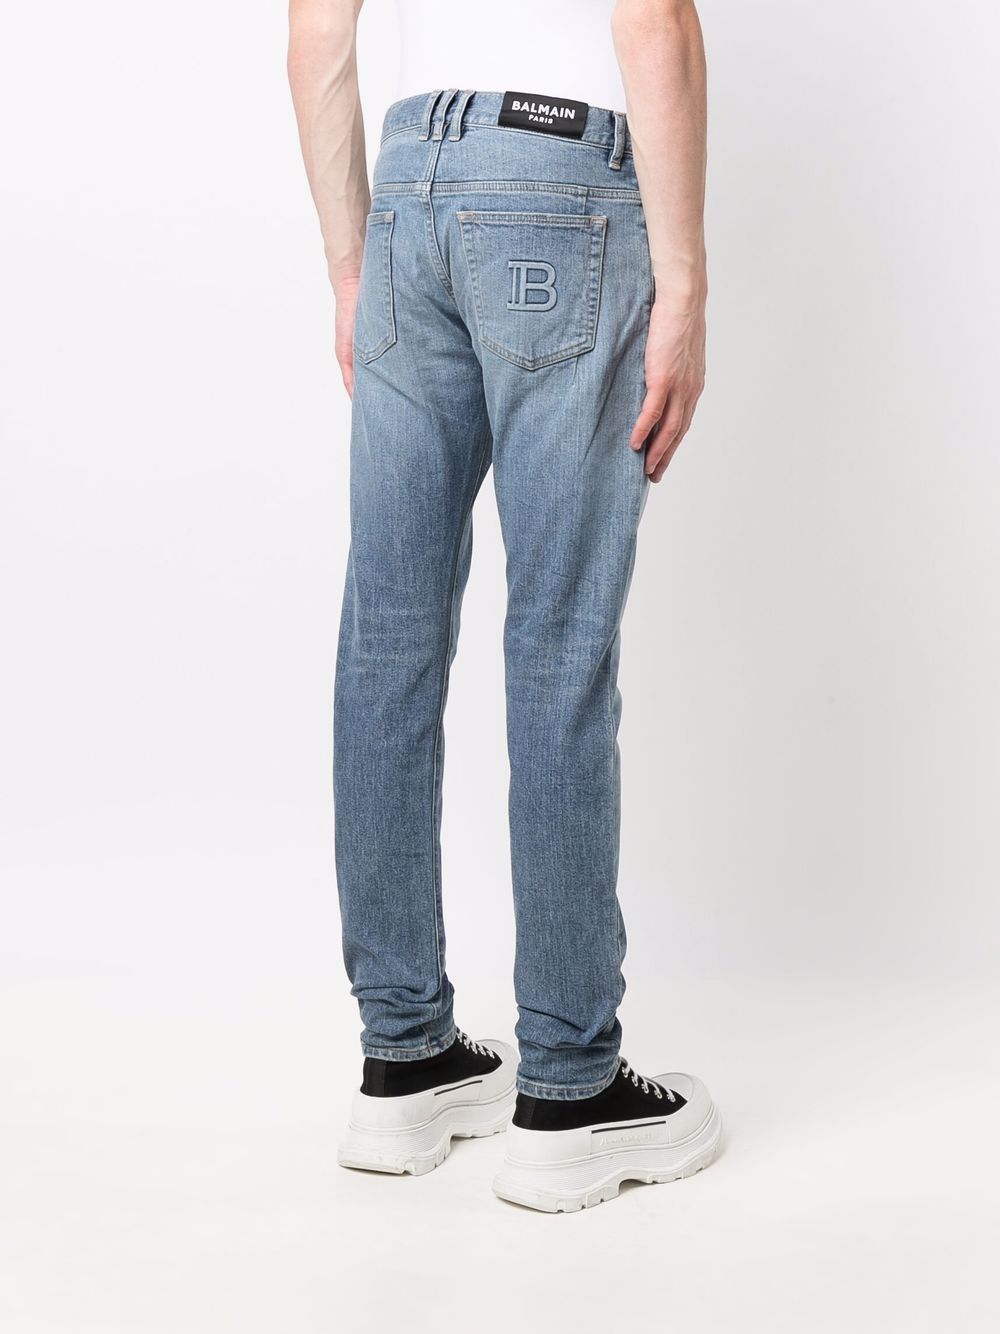 фото Balmain джинсы кроя слим с тисненым логотипом